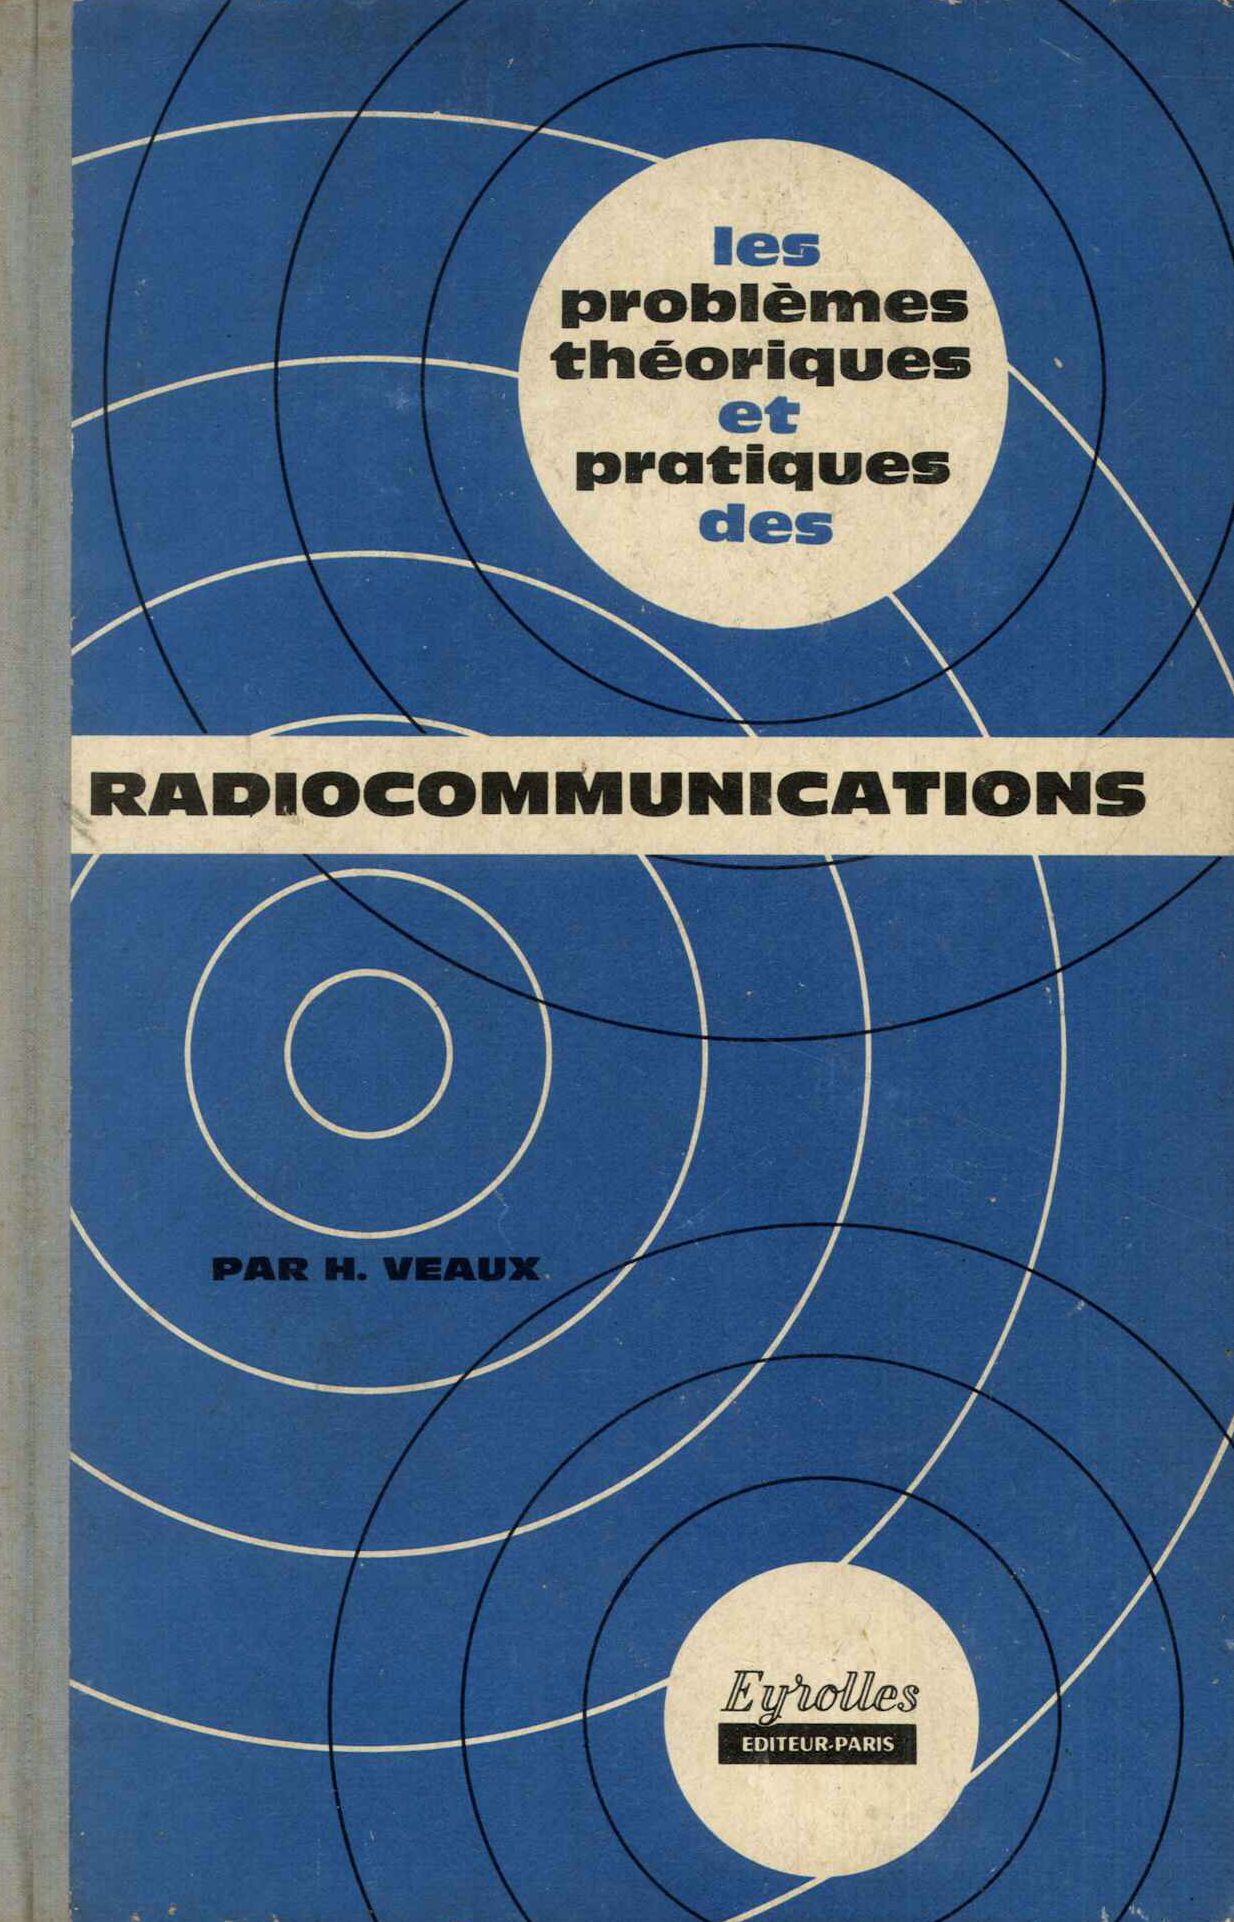 Les problemes theoriques et pratiques des radiocommunications